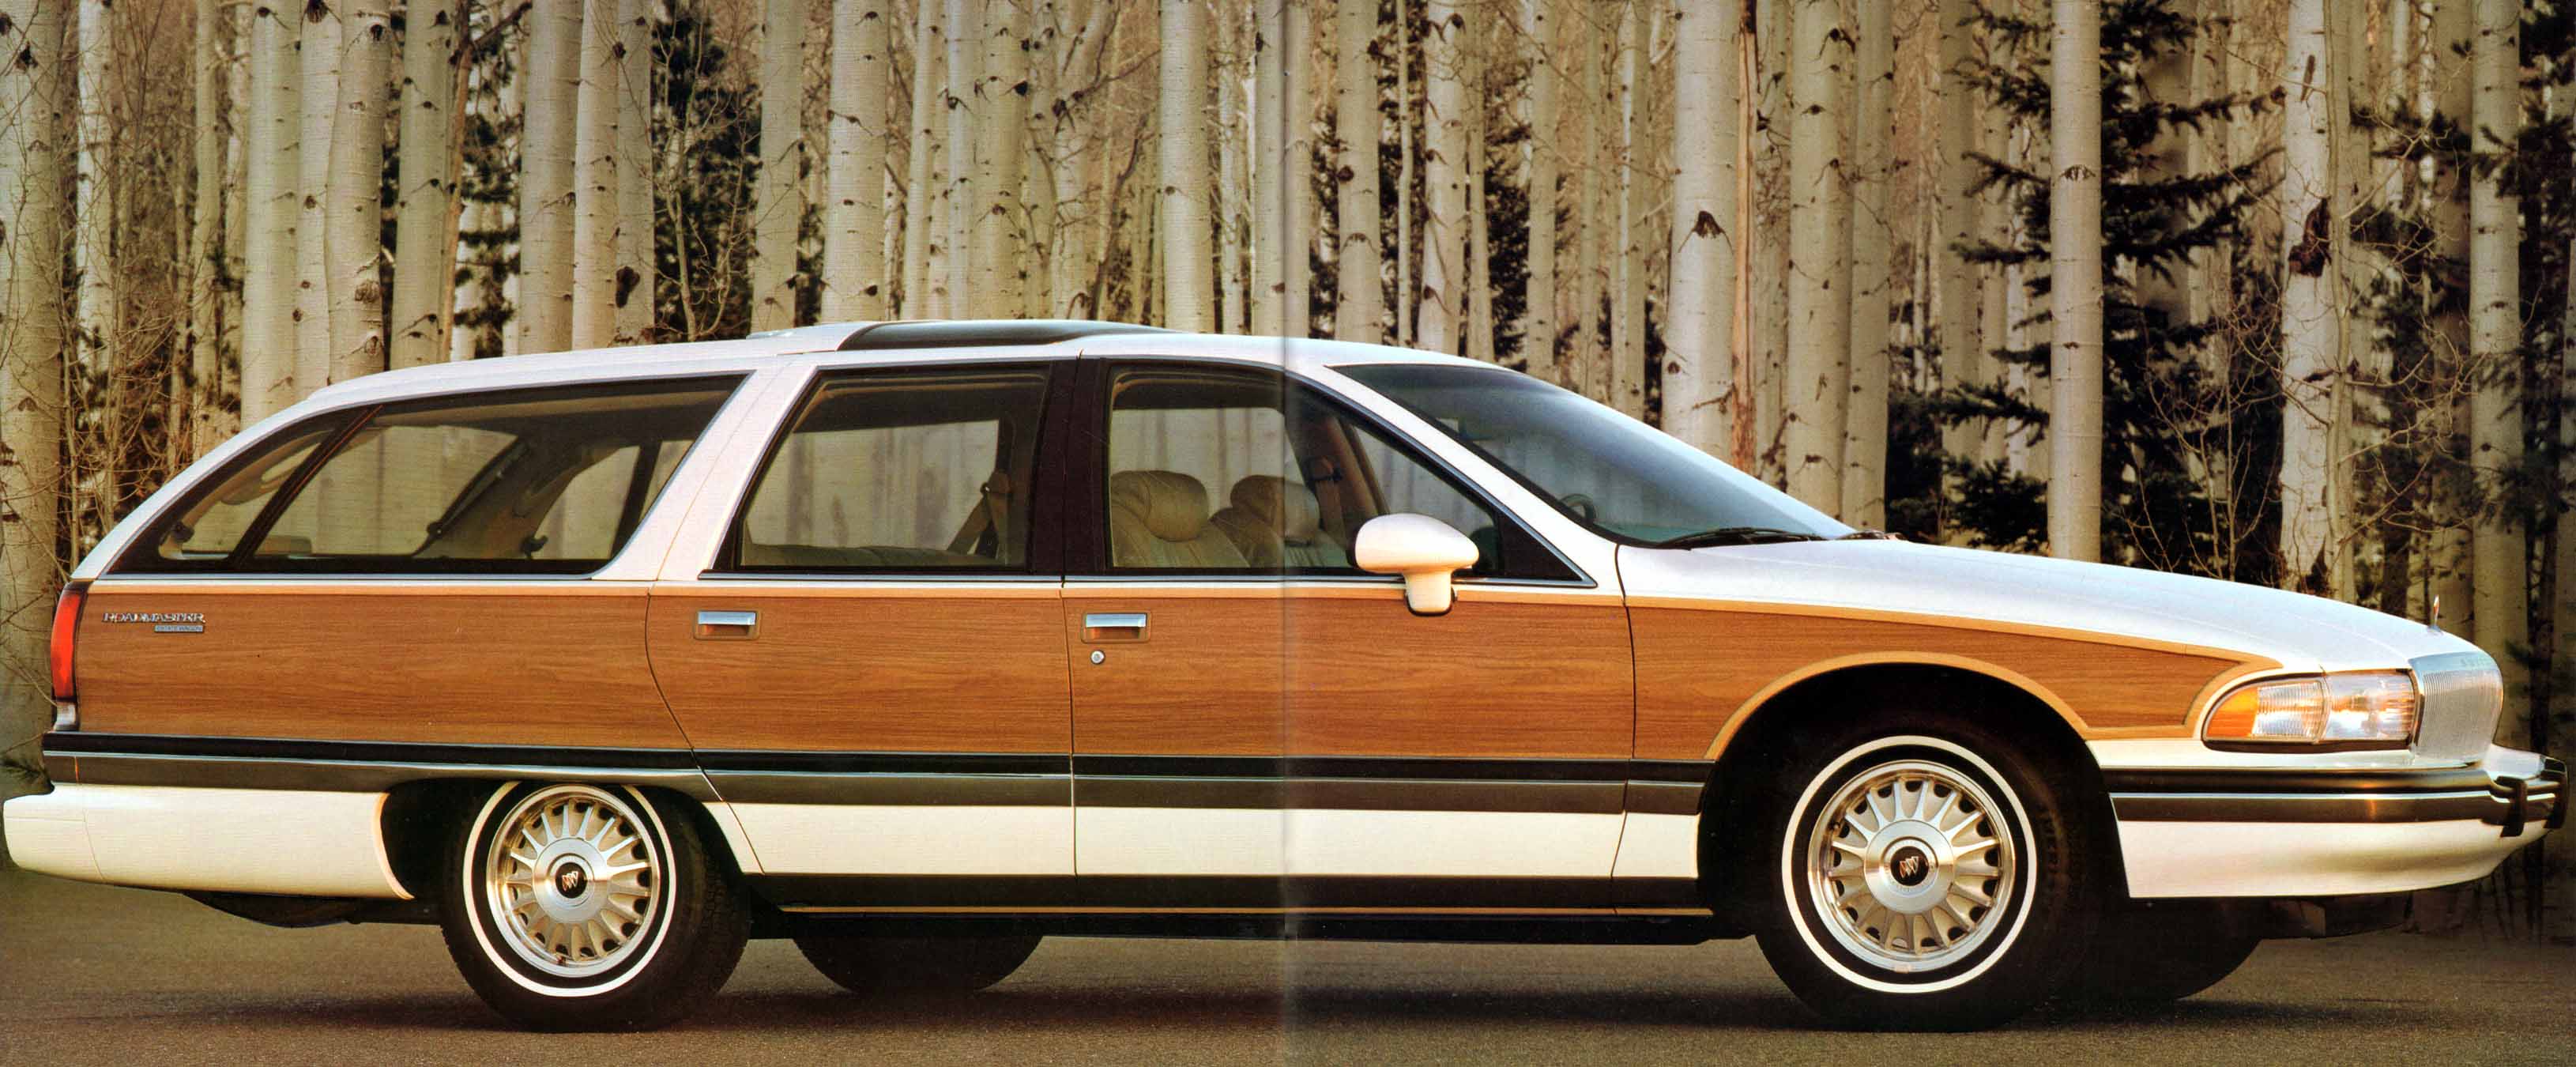 1991 Buick Full Line Prestige-70-71